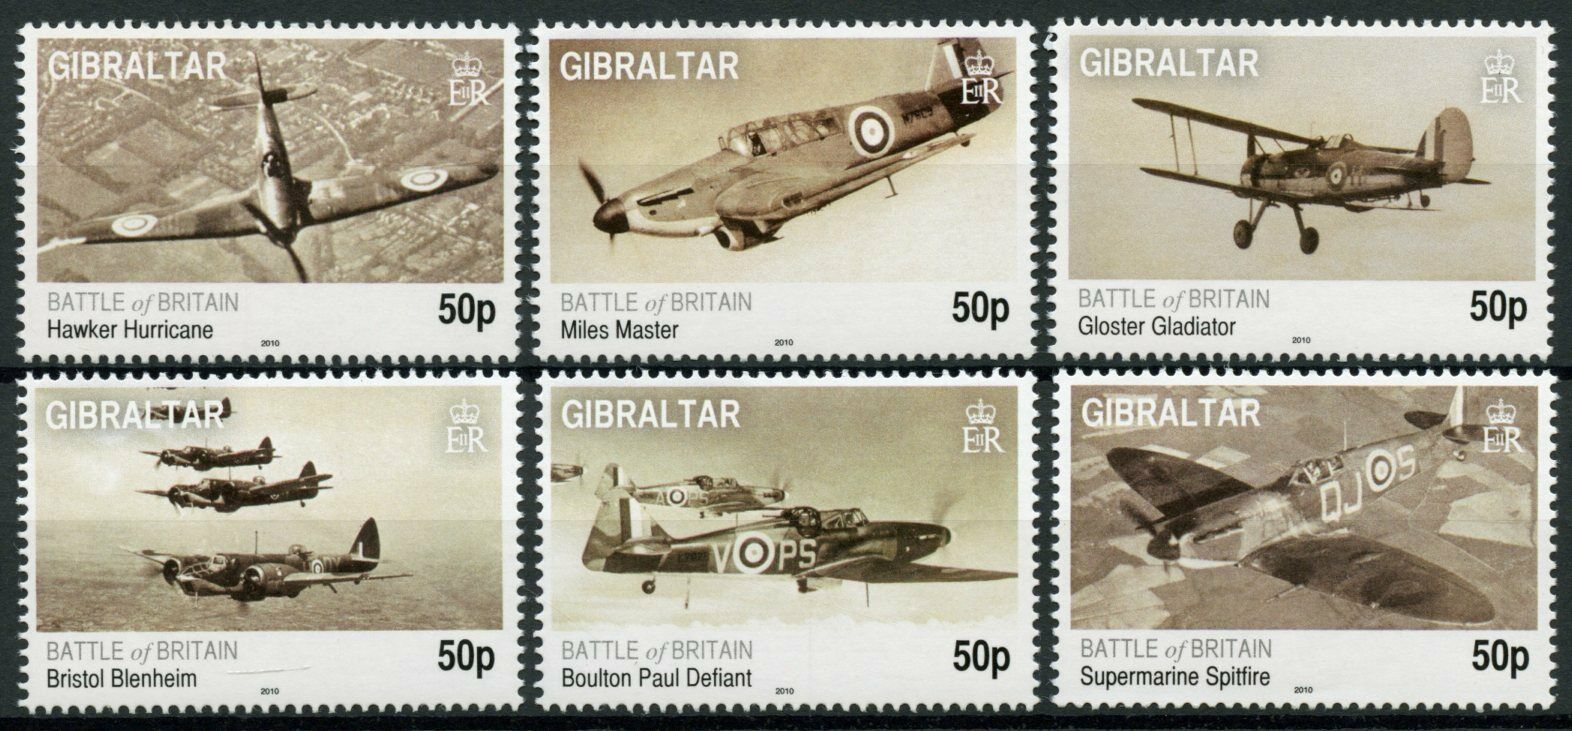 Gibraltar 2010 MNH Military Stamps WWII WW2 Battle of Britain Spitfires 6v Set